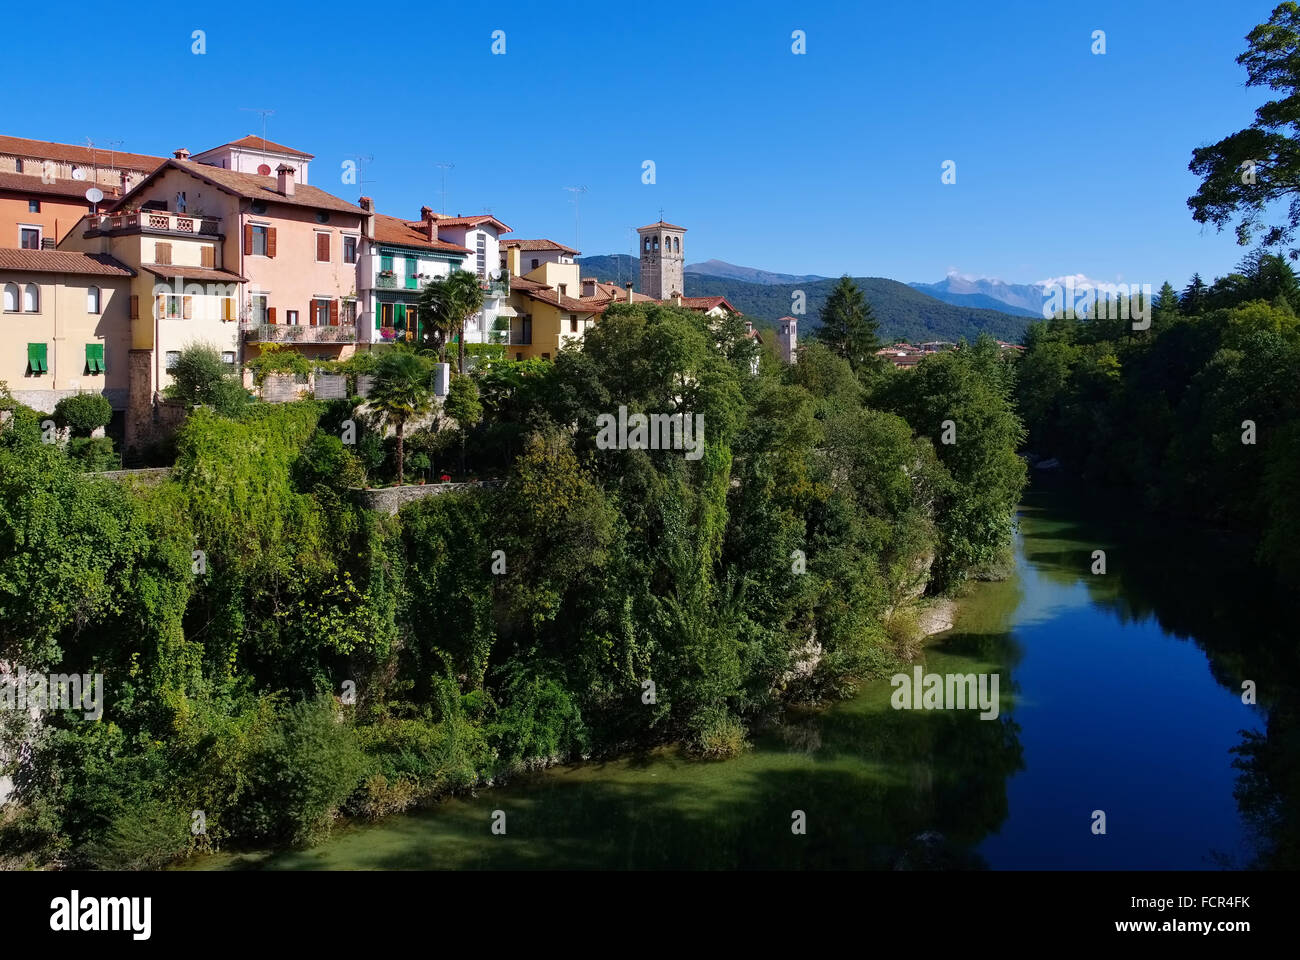 Die Stadt Cividale del Friuli in Oberitalien - Il comune di Cividale del Friuli nel nord Italia Foto Stock